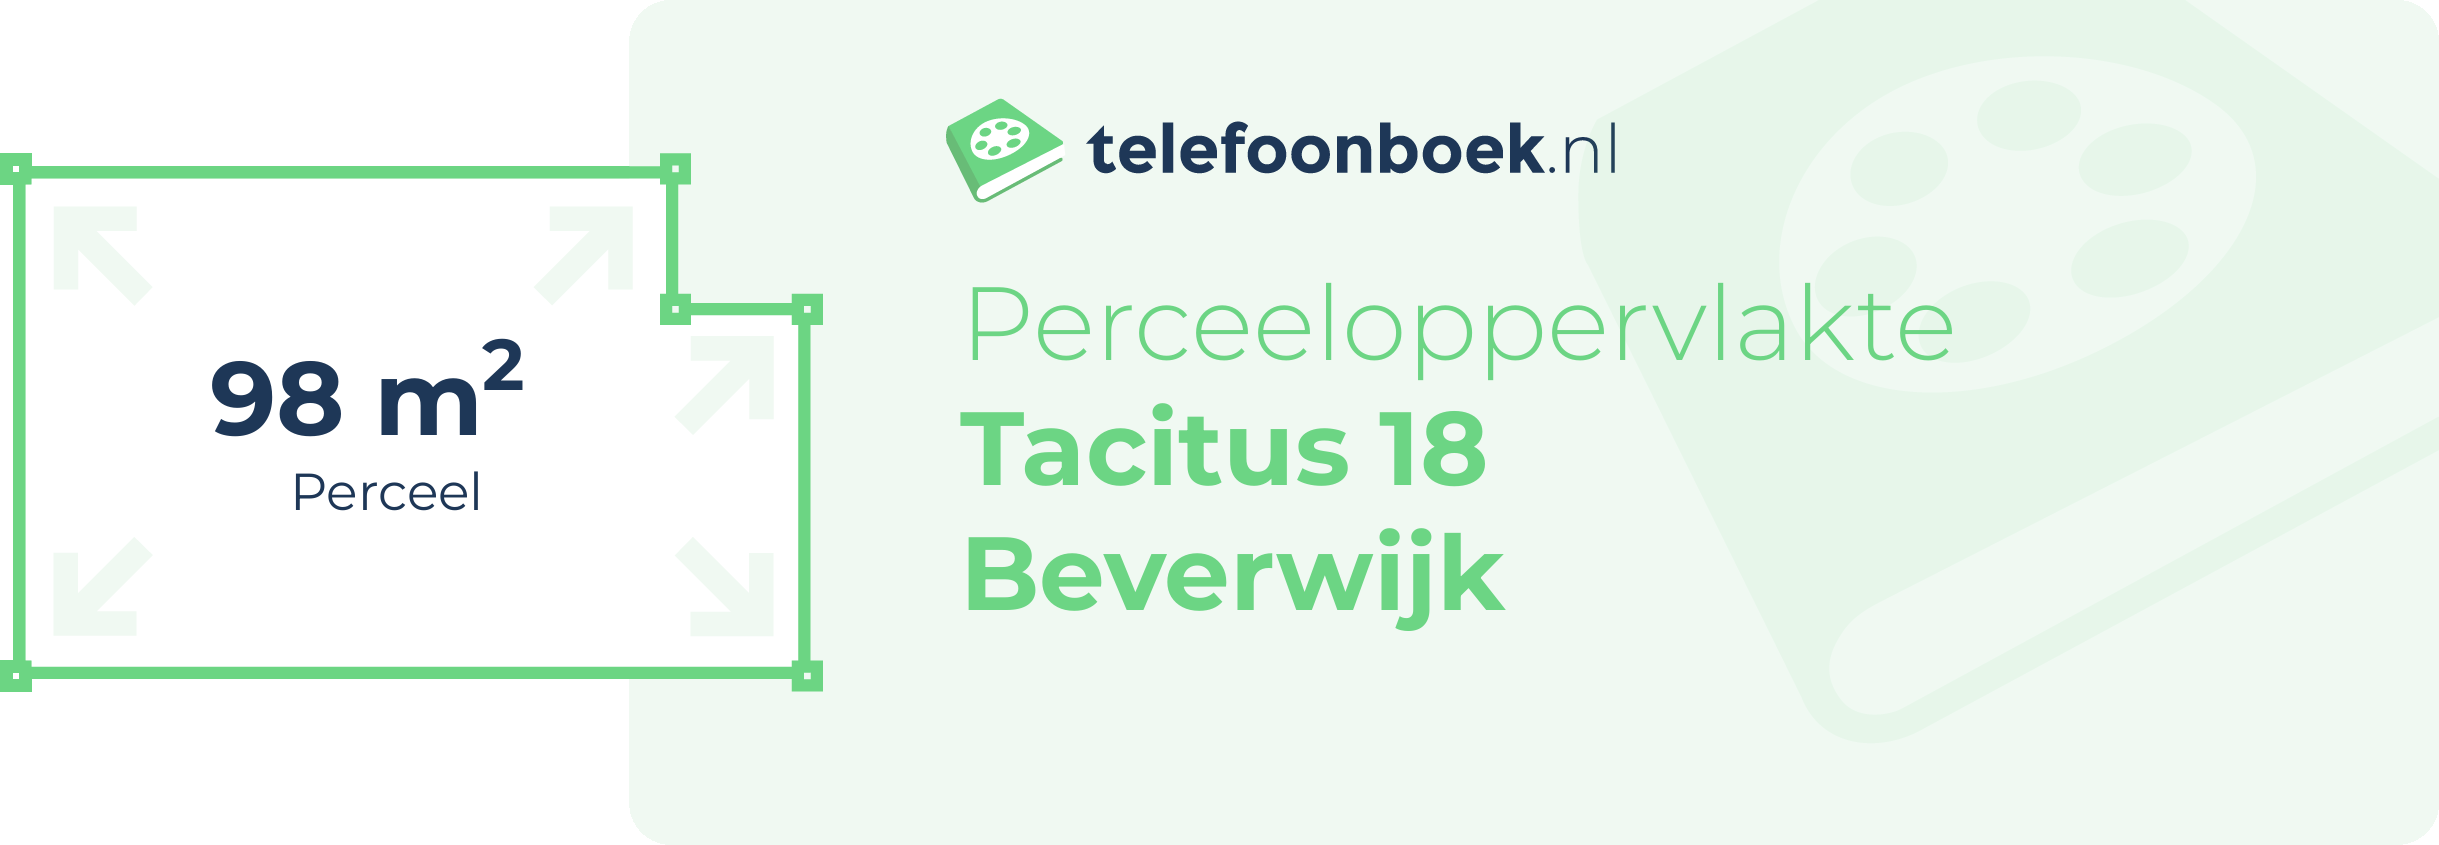 Perceeloppervlakte Tacitus 18 Beverwijk